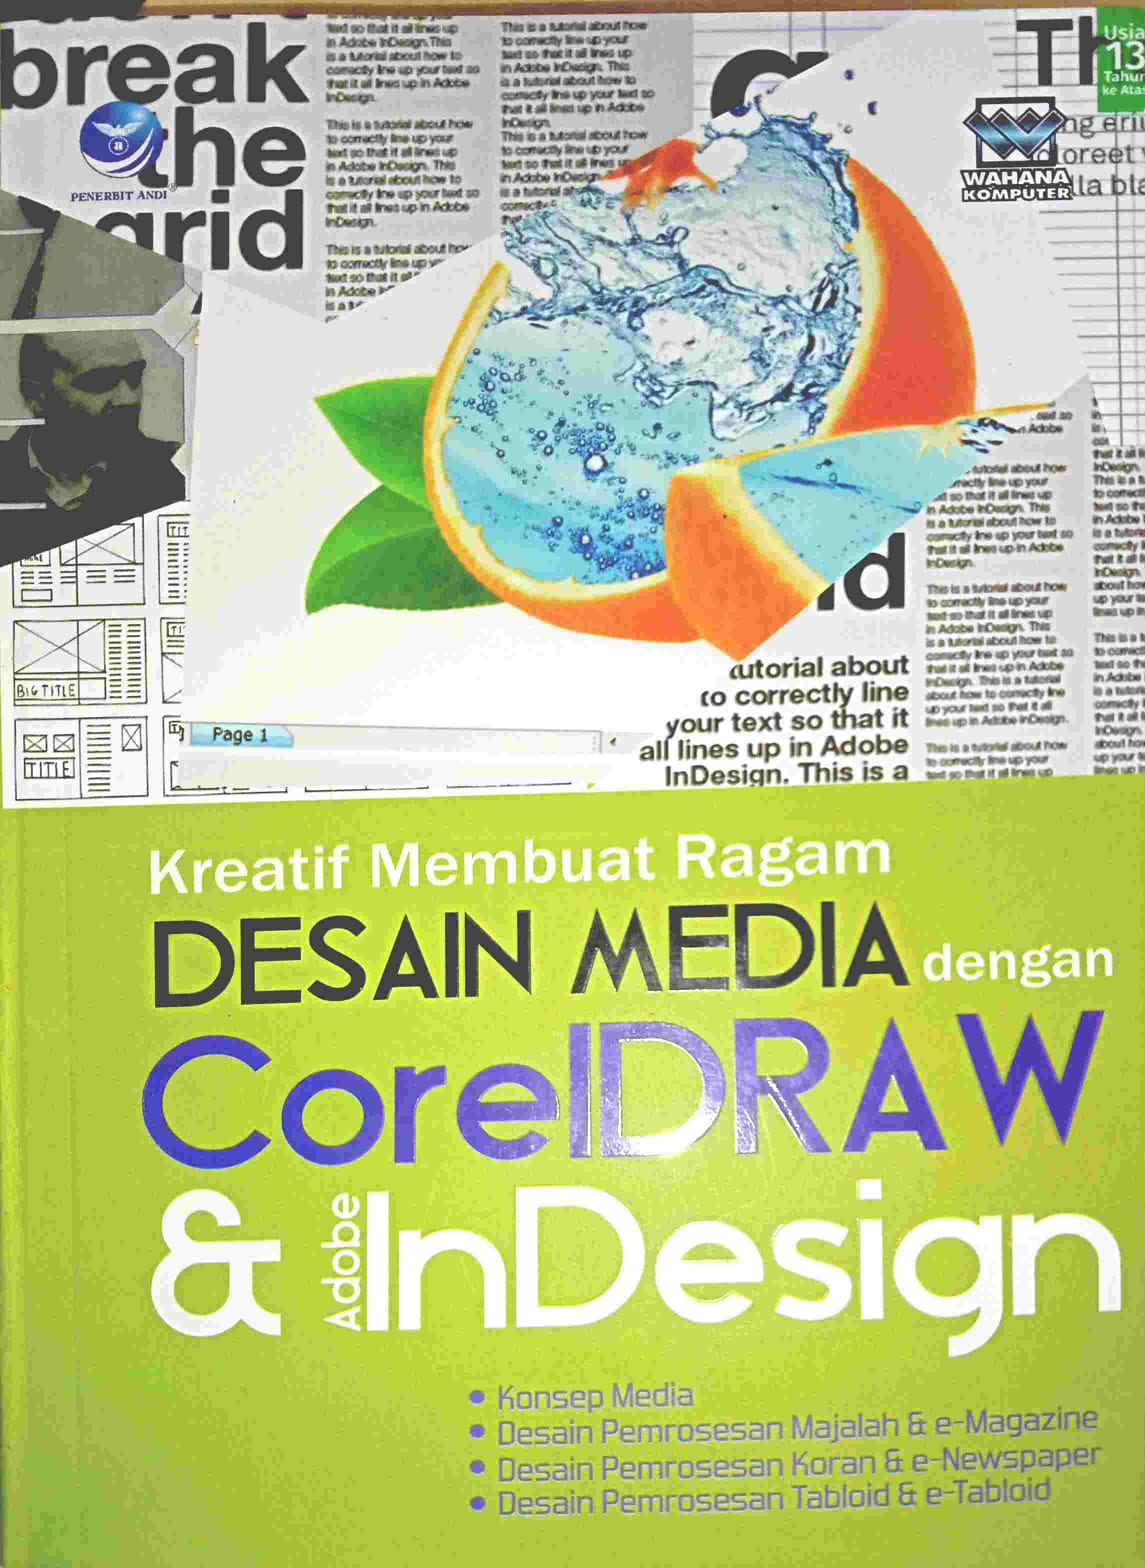 Kreatif Membuat Ragam Desain Media Dengan CoreIDRAW Dan Adobe InDesign